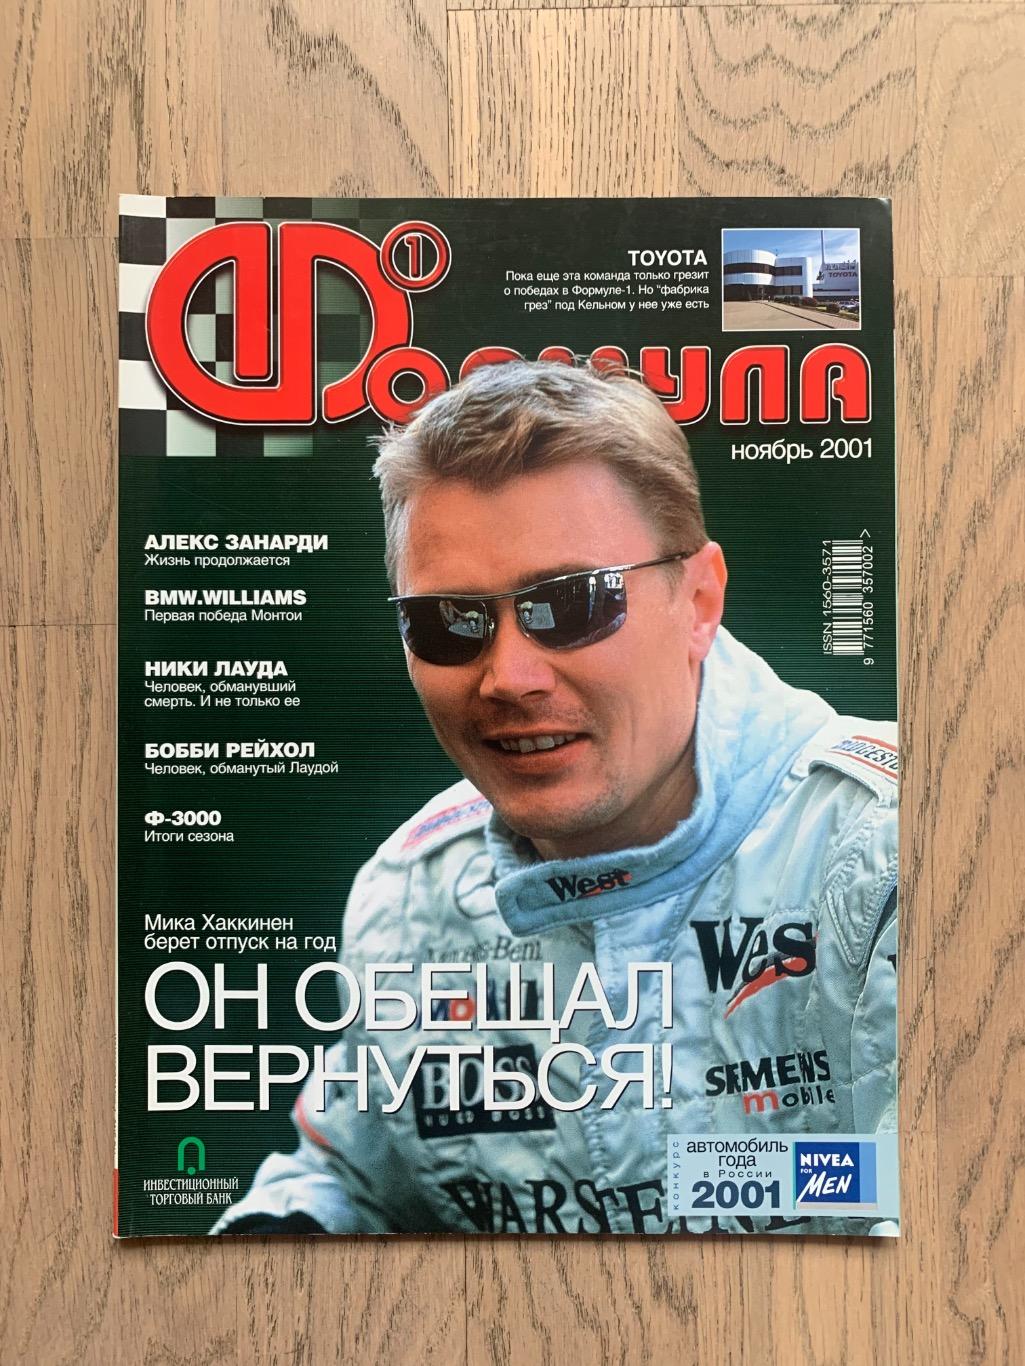 Журнал Формула 1 (Formula Magazine) / ноябрь 2001